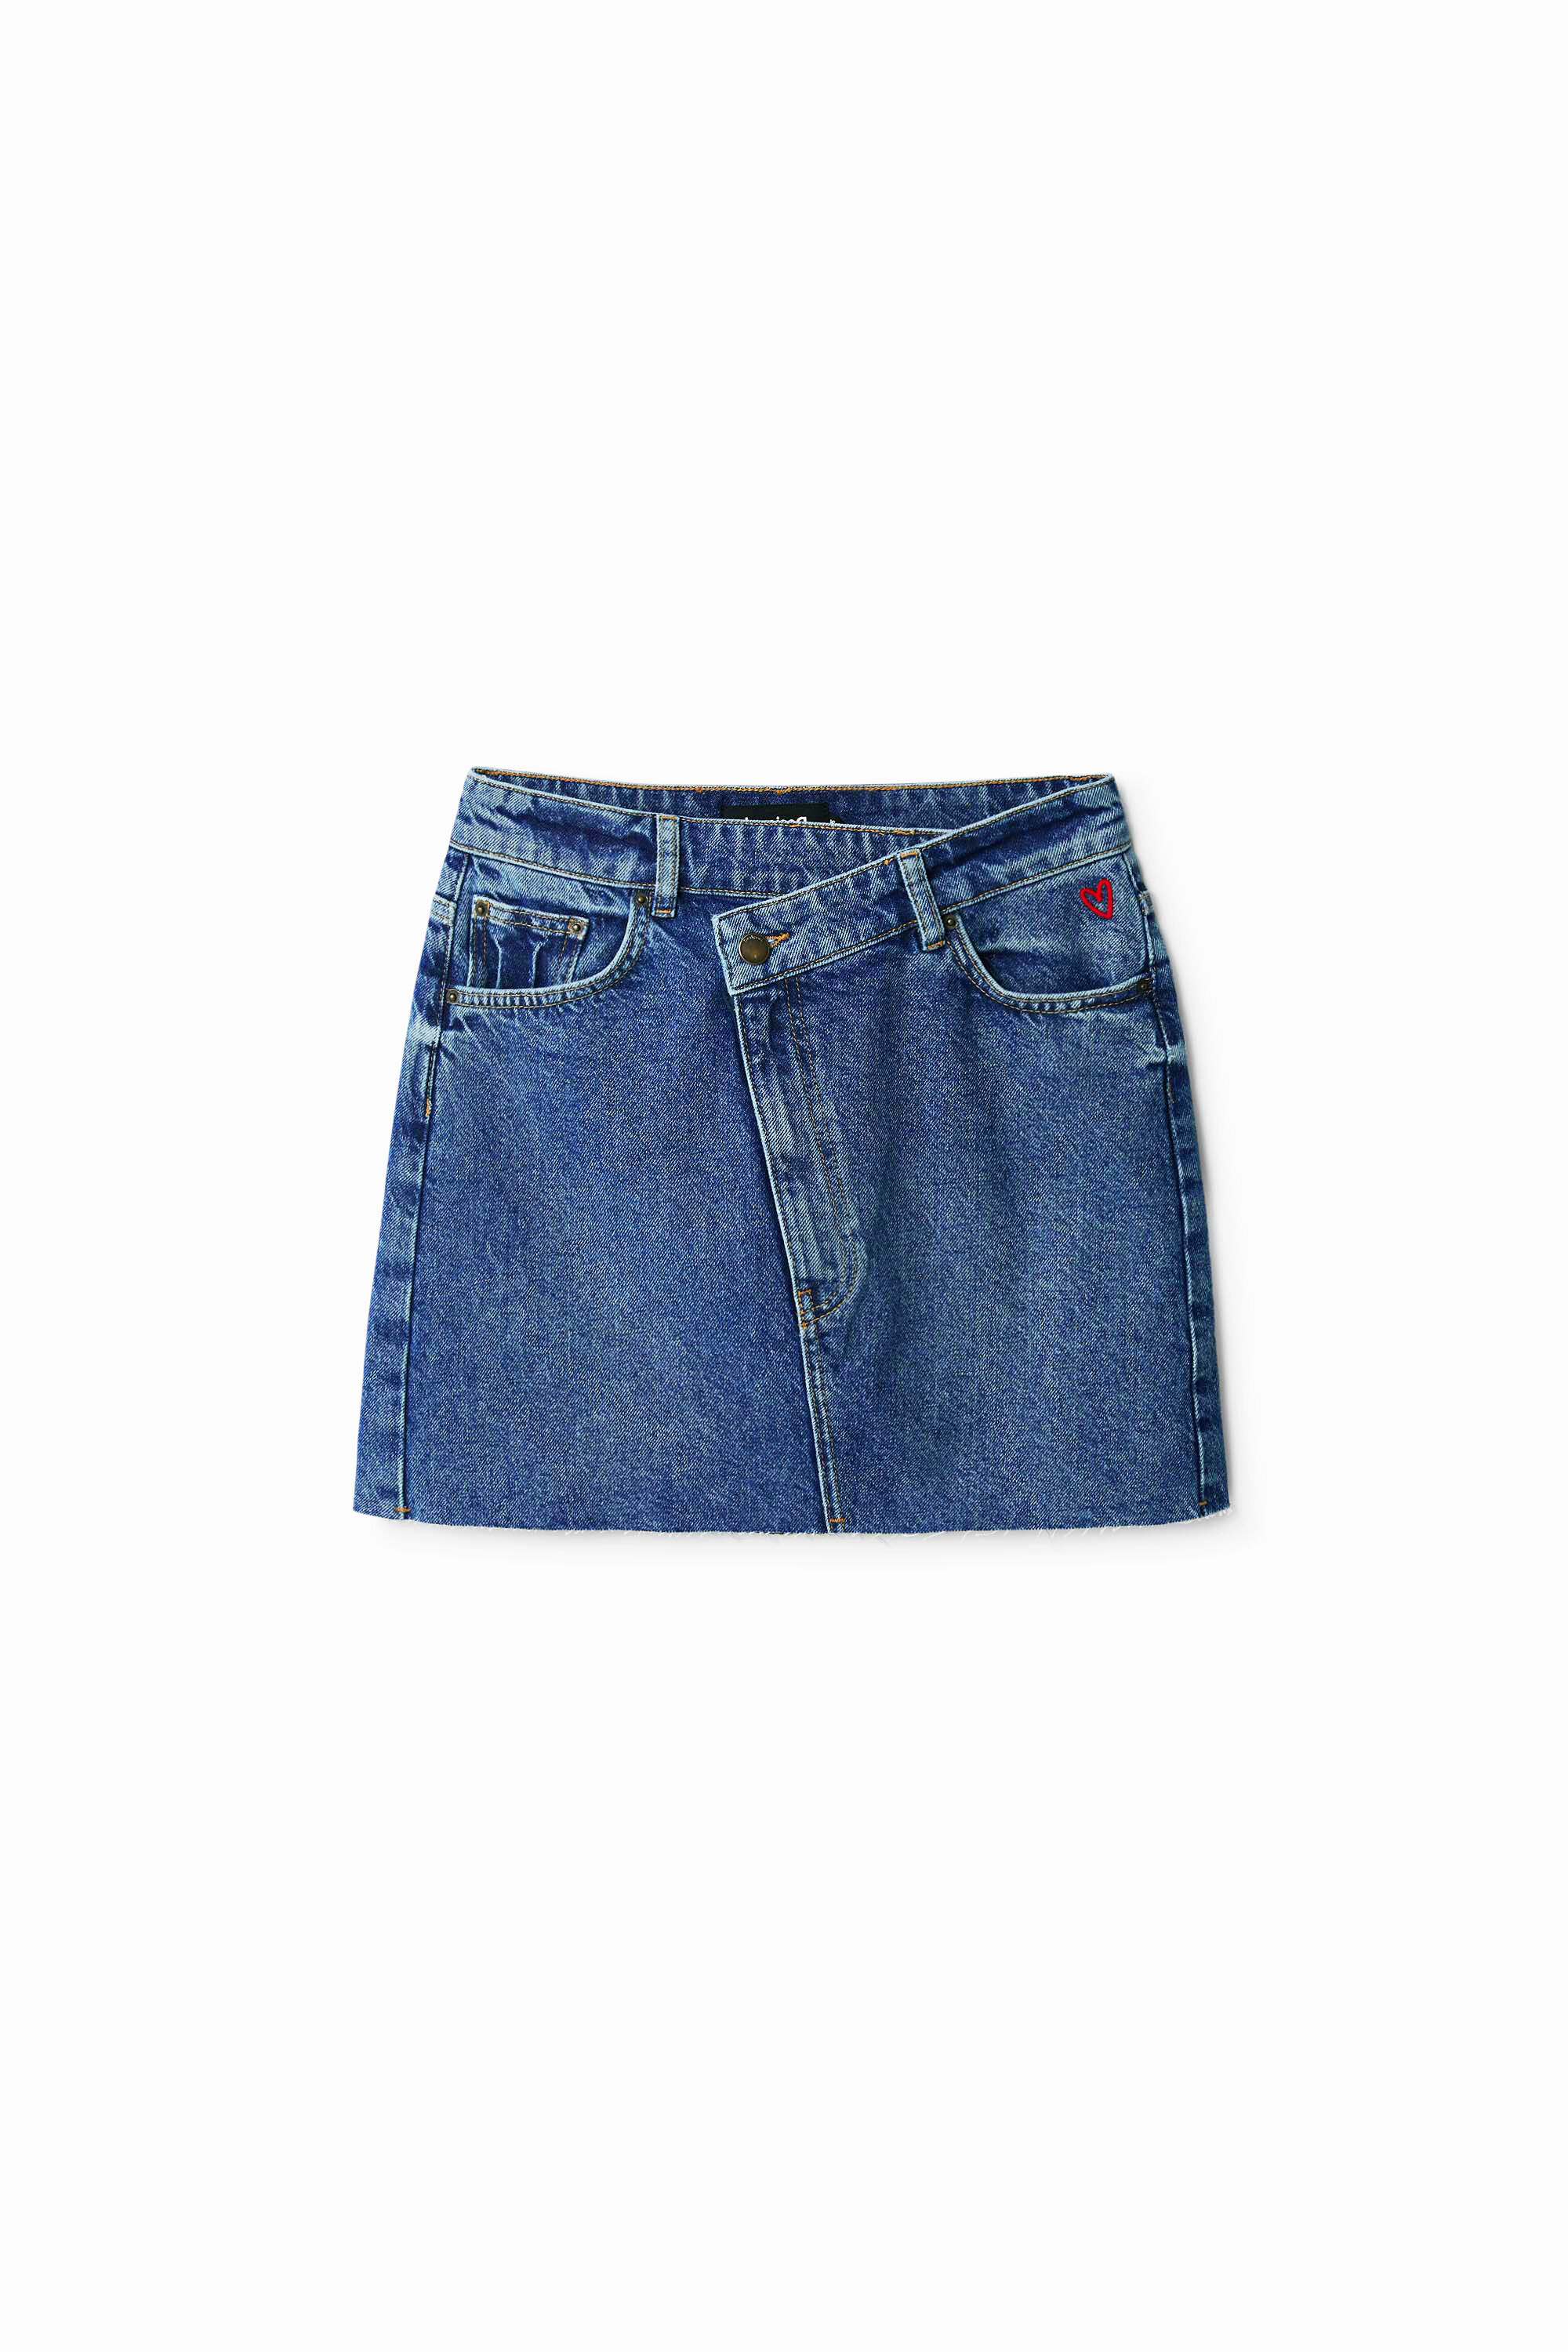 Criss-cross waist denim mini skirt - BLUE - XS